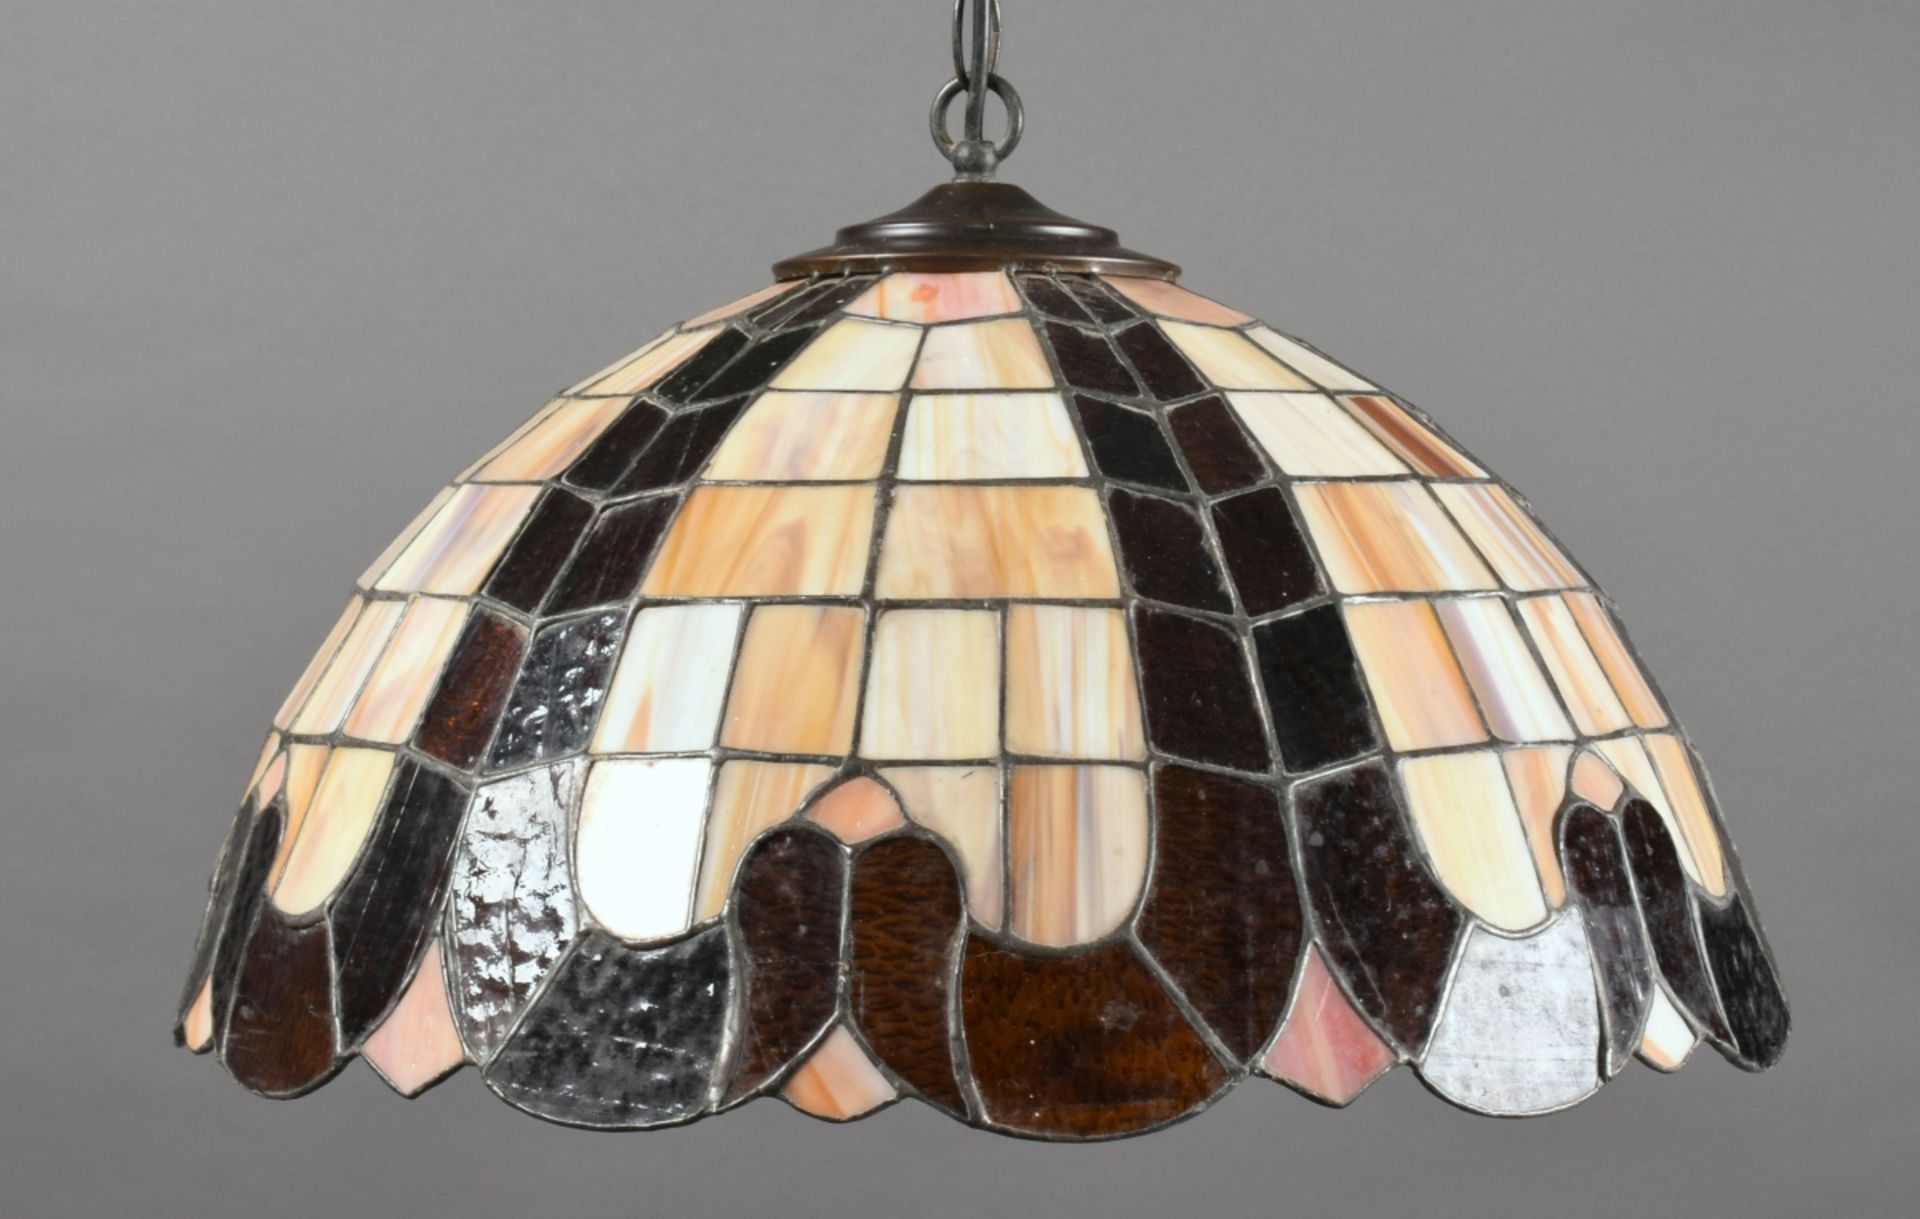 Deckenleuchte halbrunder Schirm im Tiffany-Stil, polychromes Glas, je 2 schmale geschwungene bräun - Bild 3 aus 3